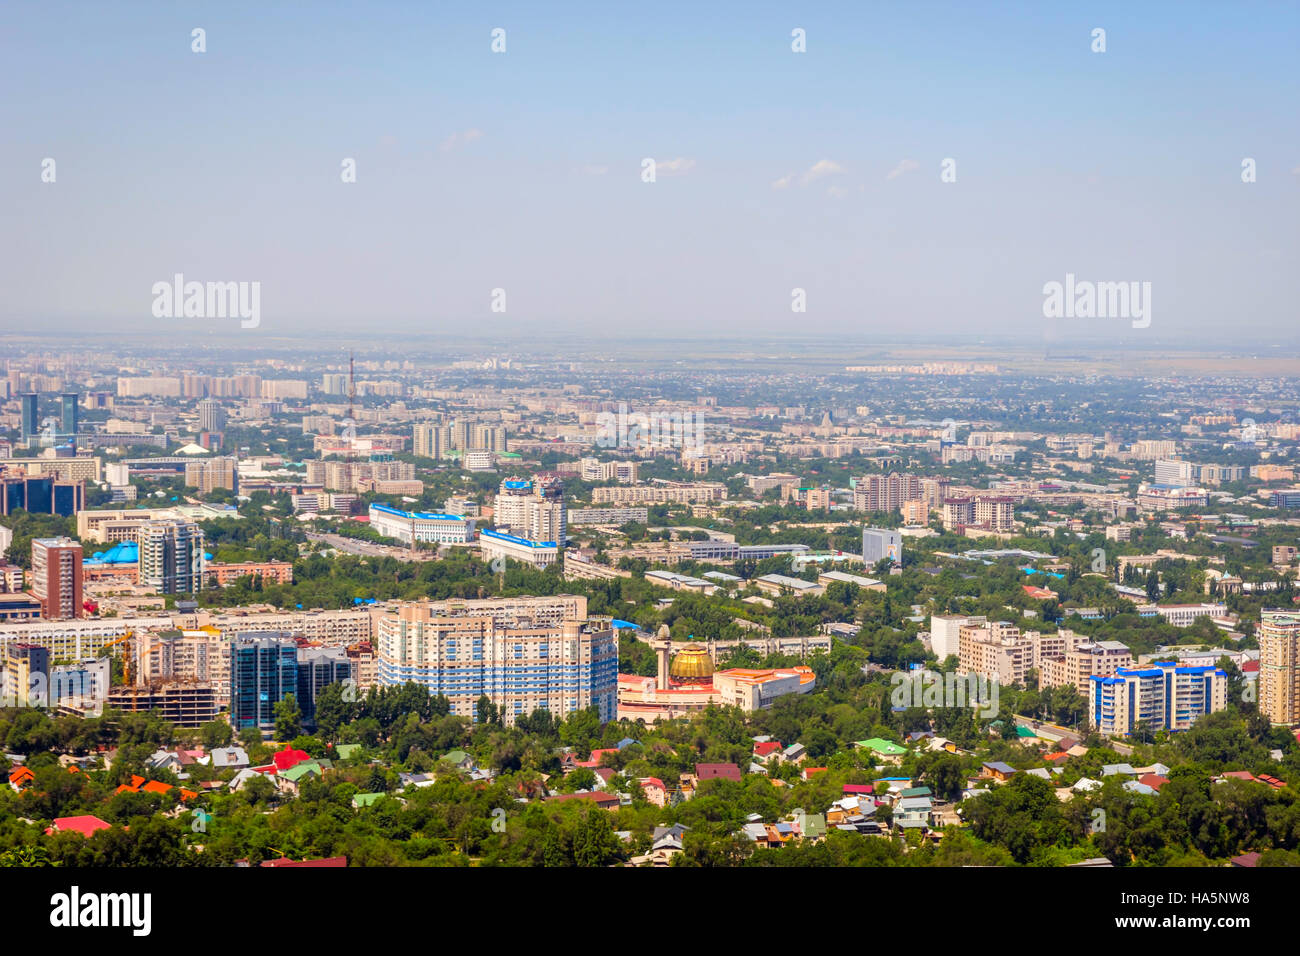 View over Almaty skyline, Kazakhstan Stock Photo